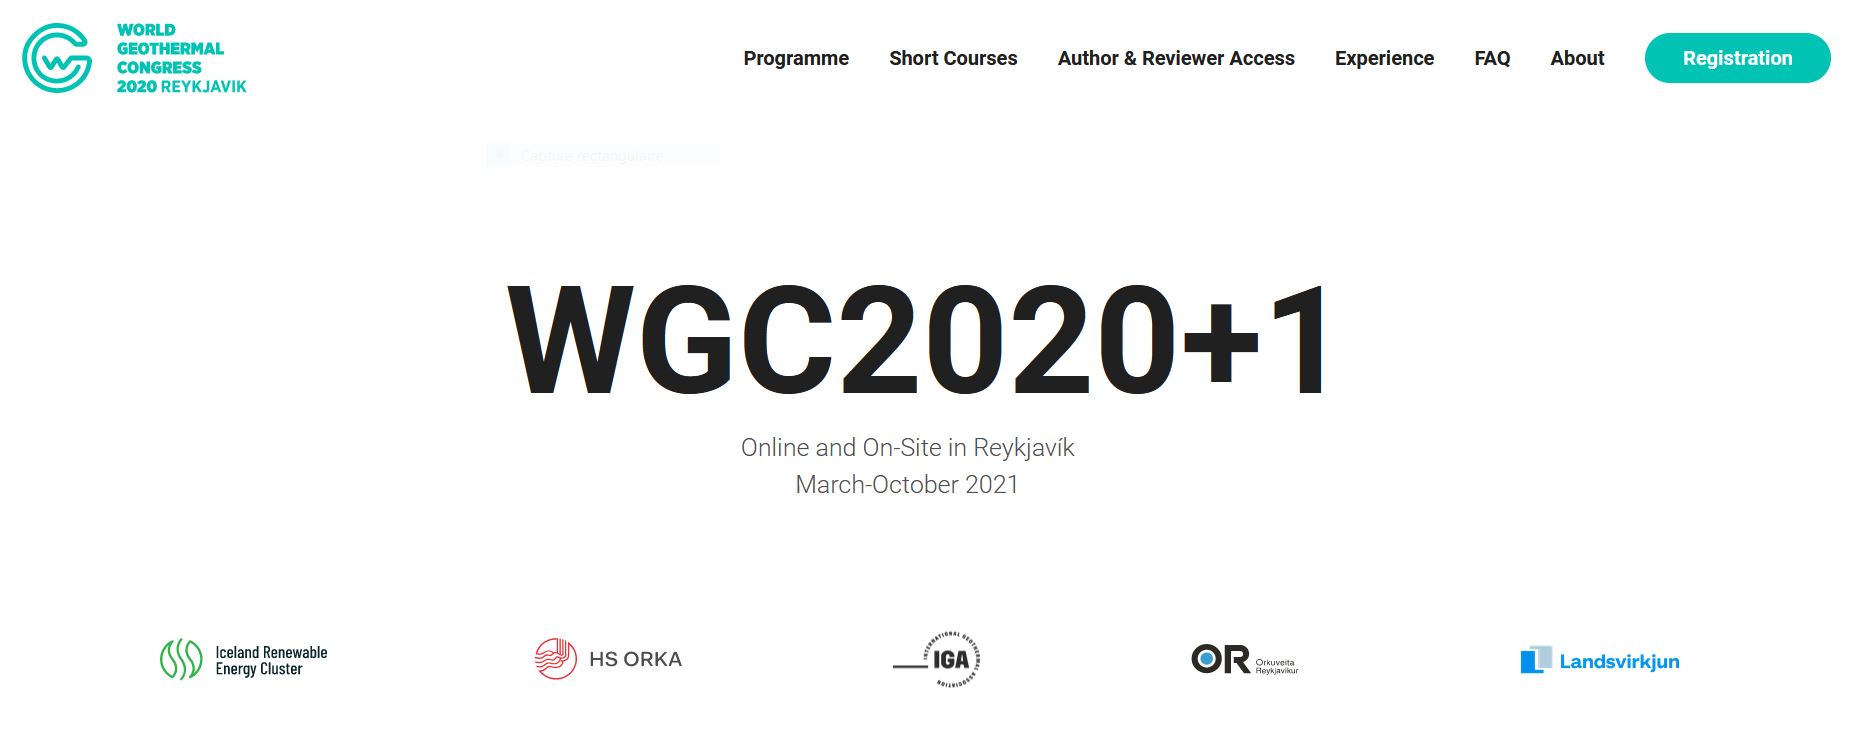 WGC 2020+1